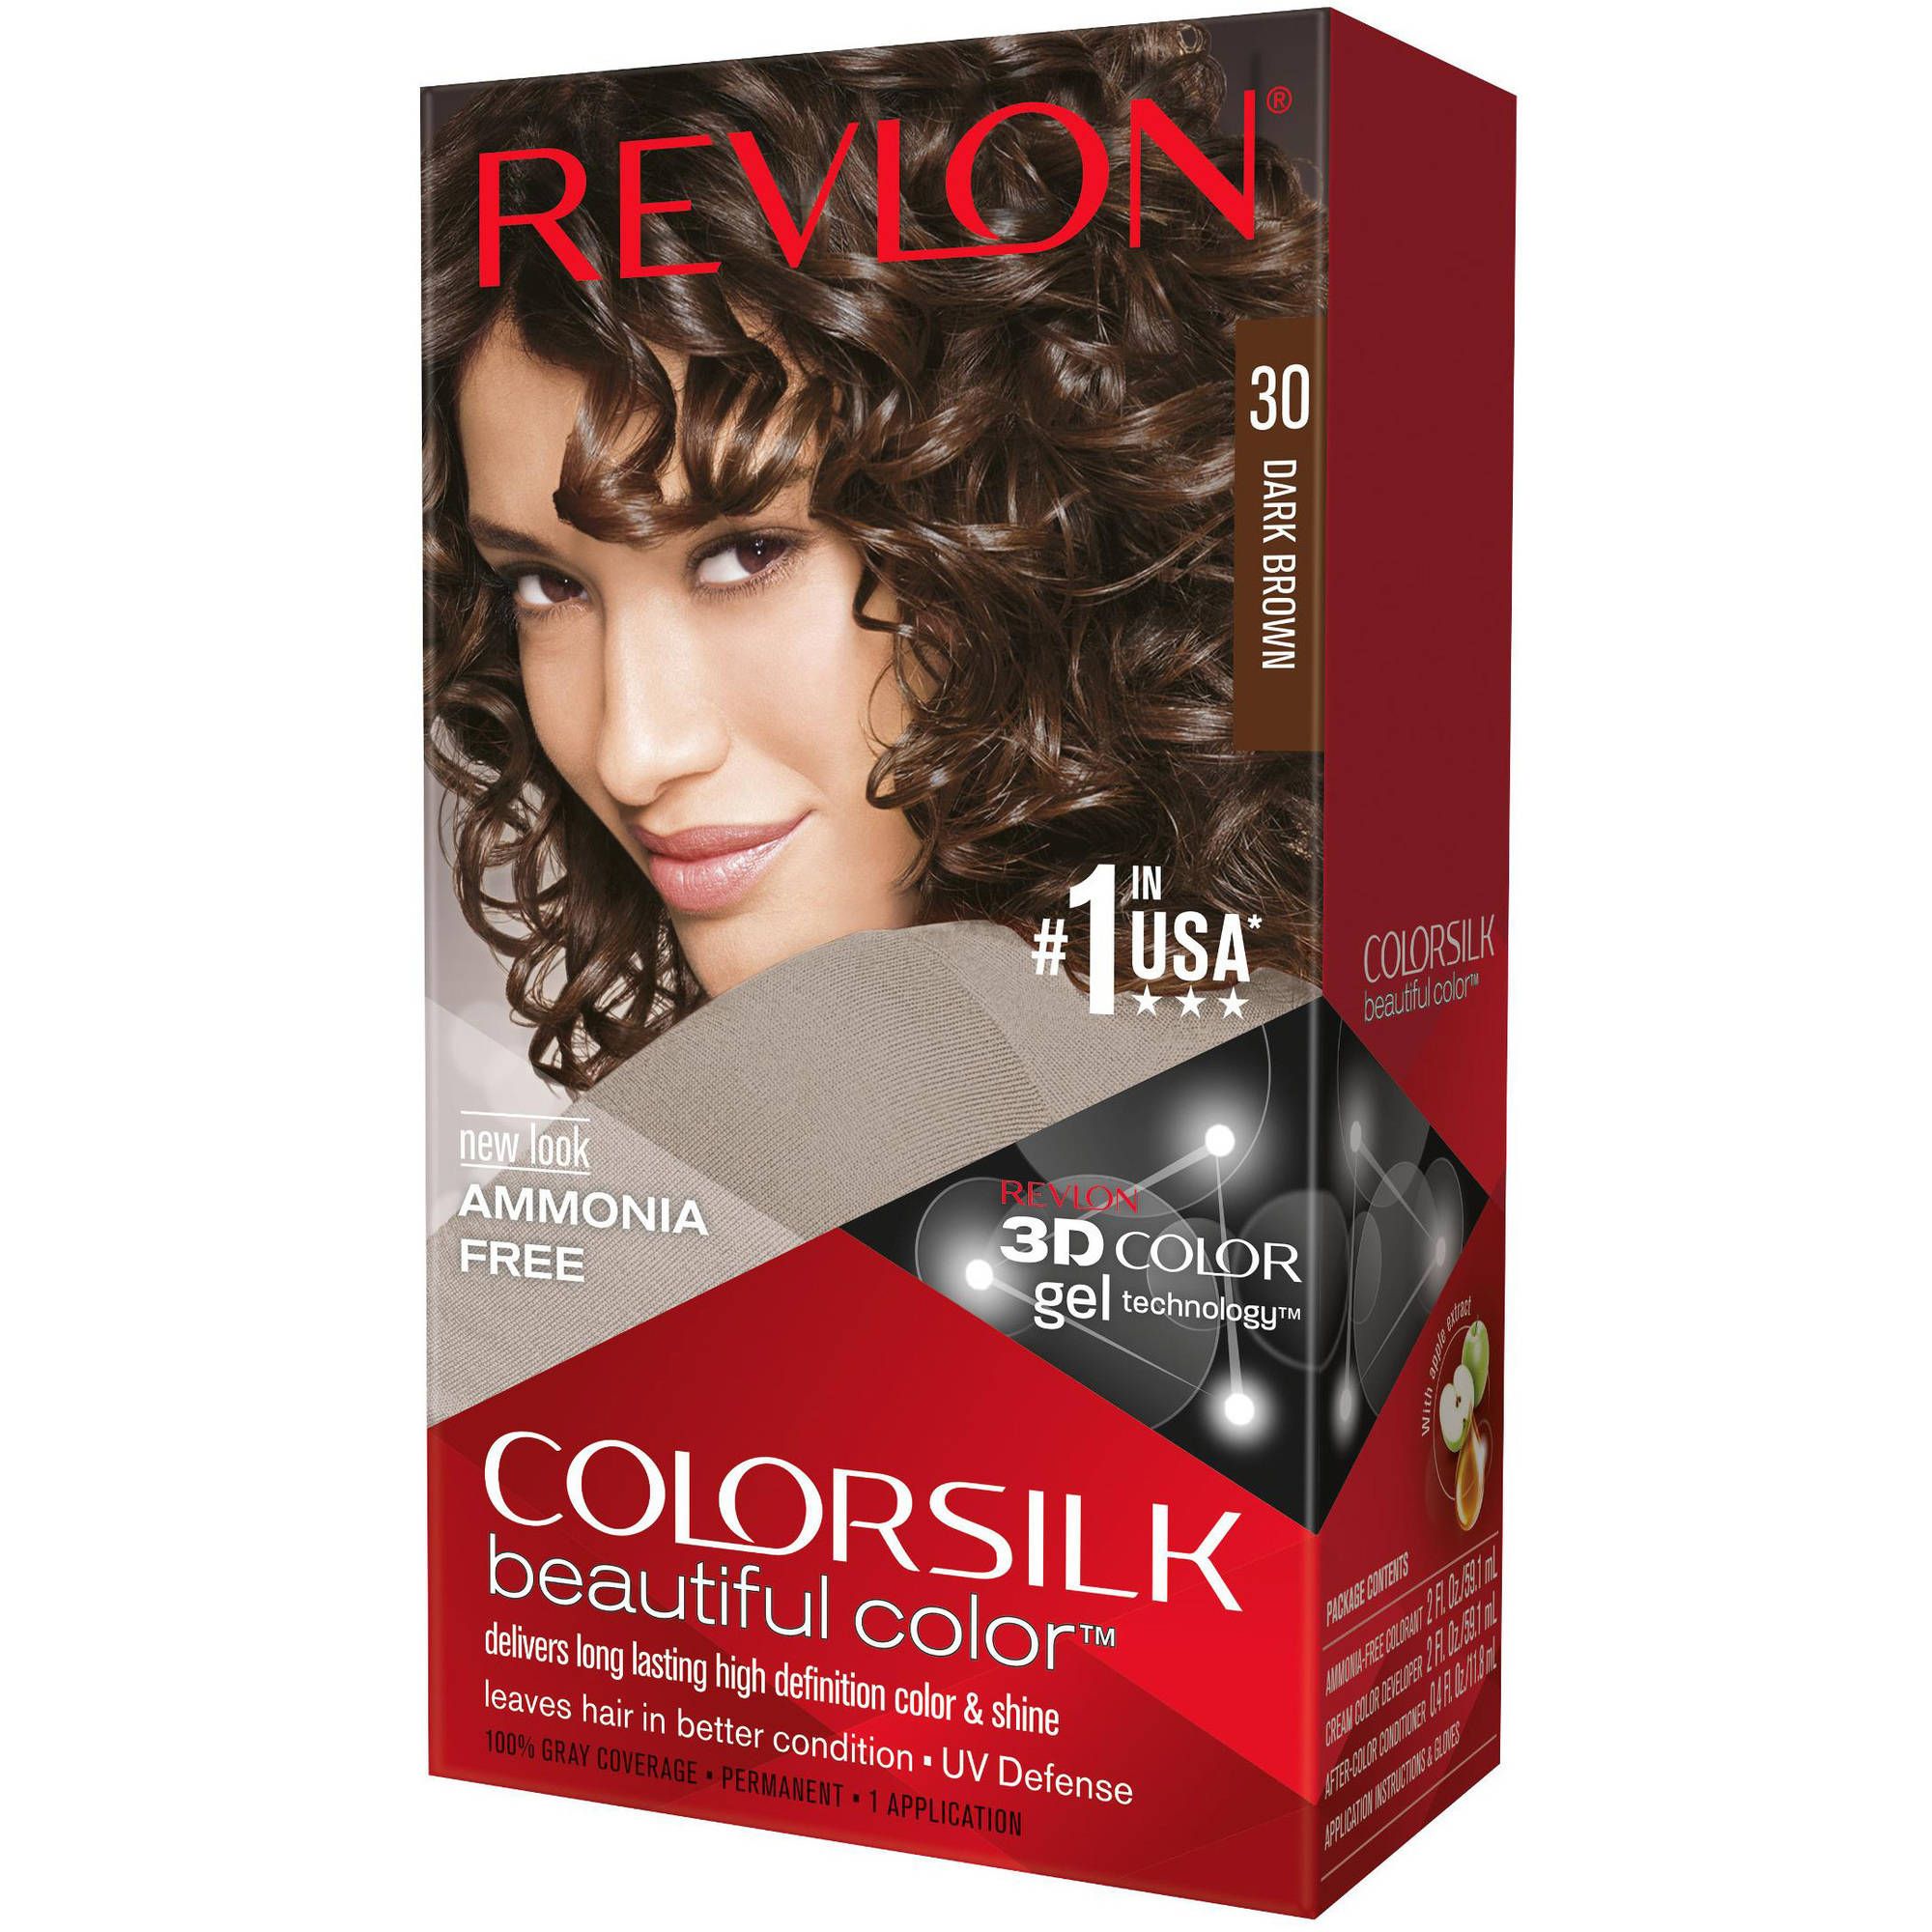 Salon Hair Dye Color Chart